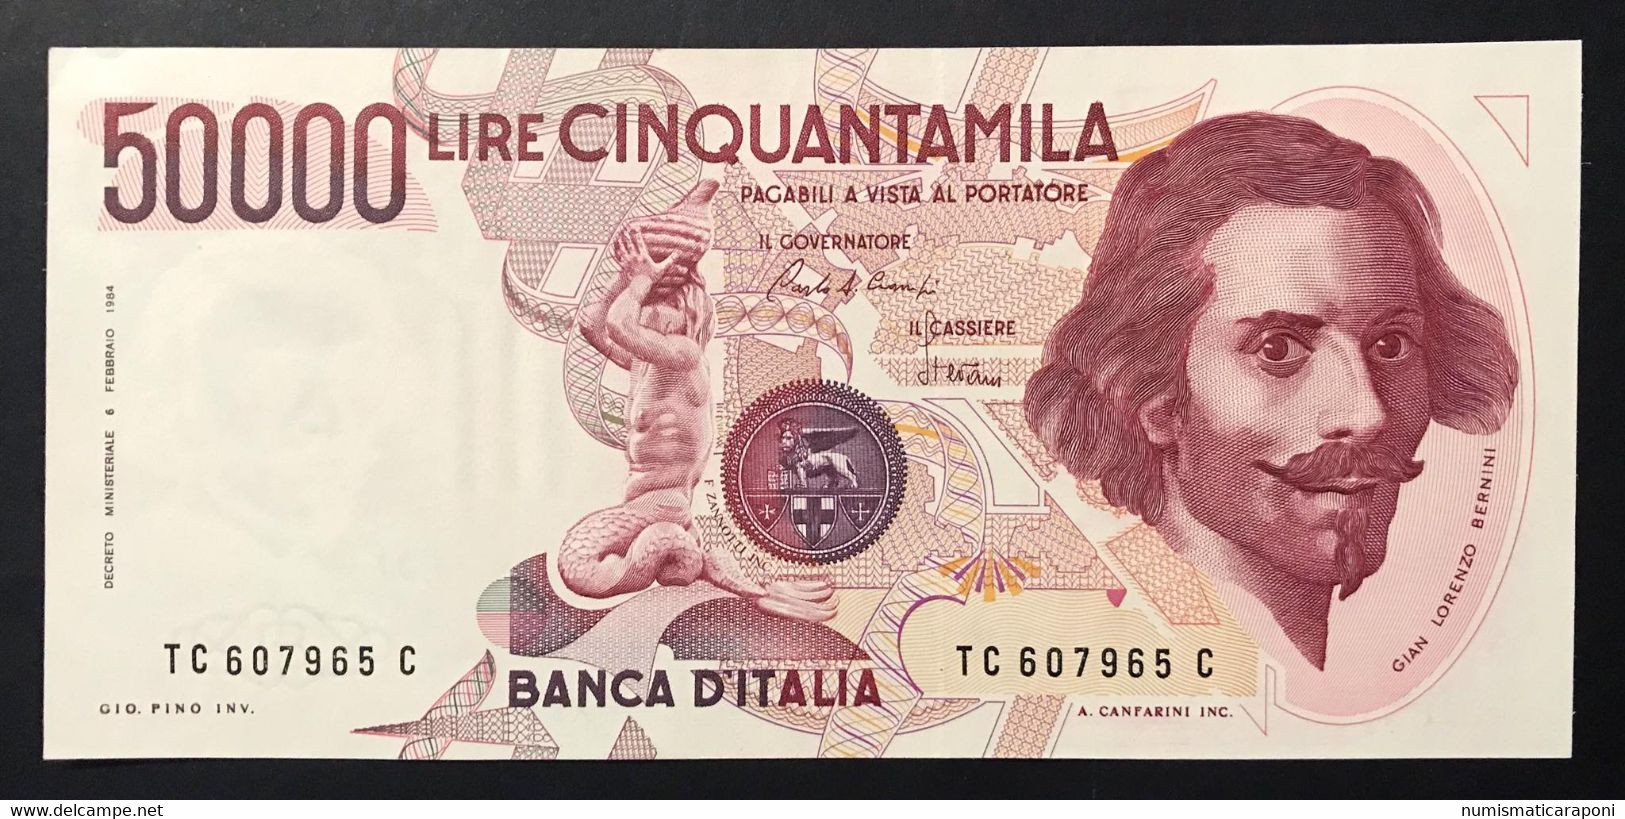 10 banconote da 500 a 100000 lire 1974-1994 spl+/fds LOTTO 1665